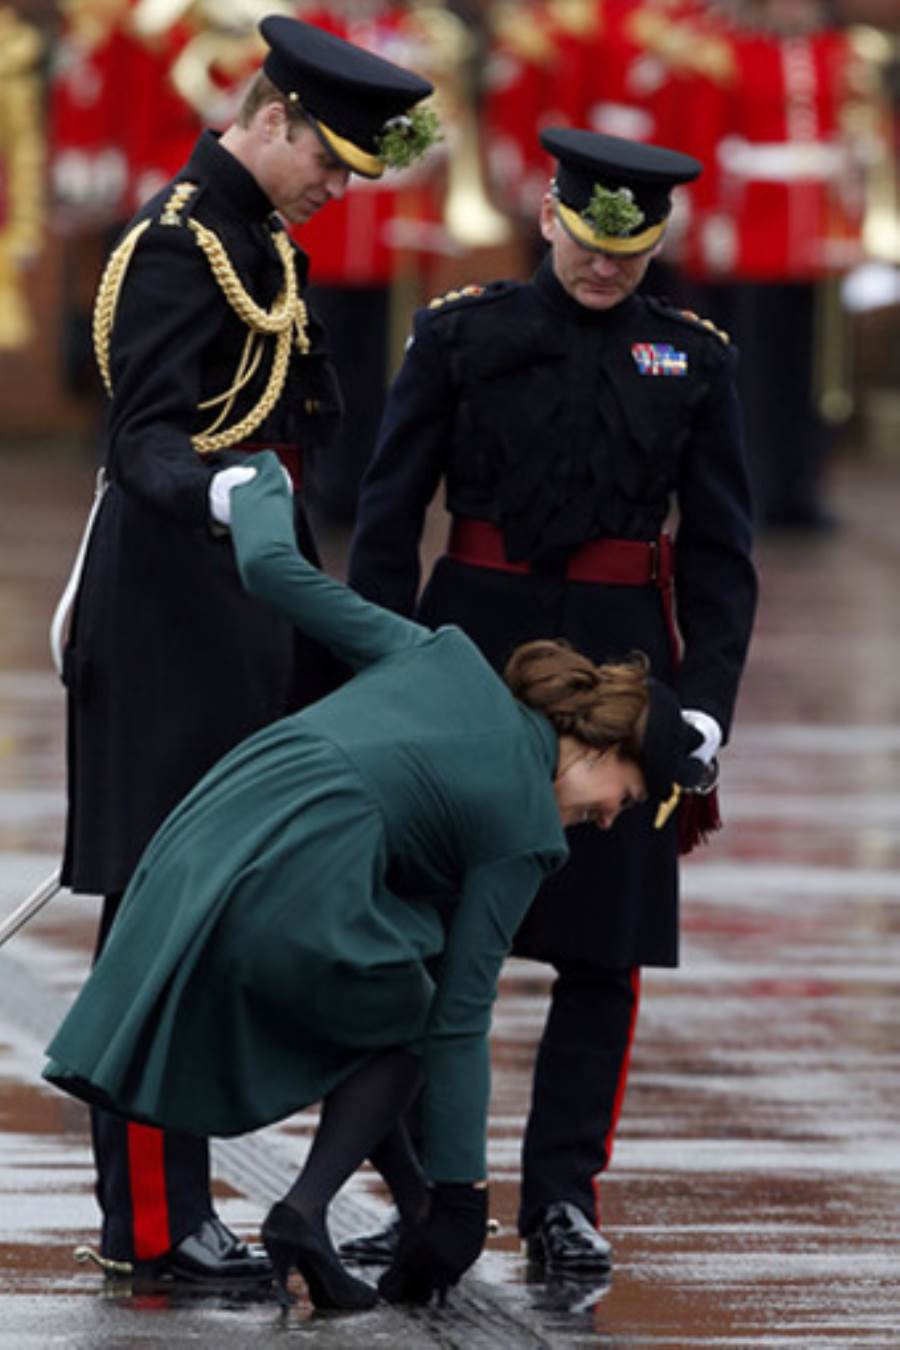  كعب حذاء كيت ميدلتون يعلق في حاجز حديدي أثناء العرض العسكري في عيد القديس باتريك